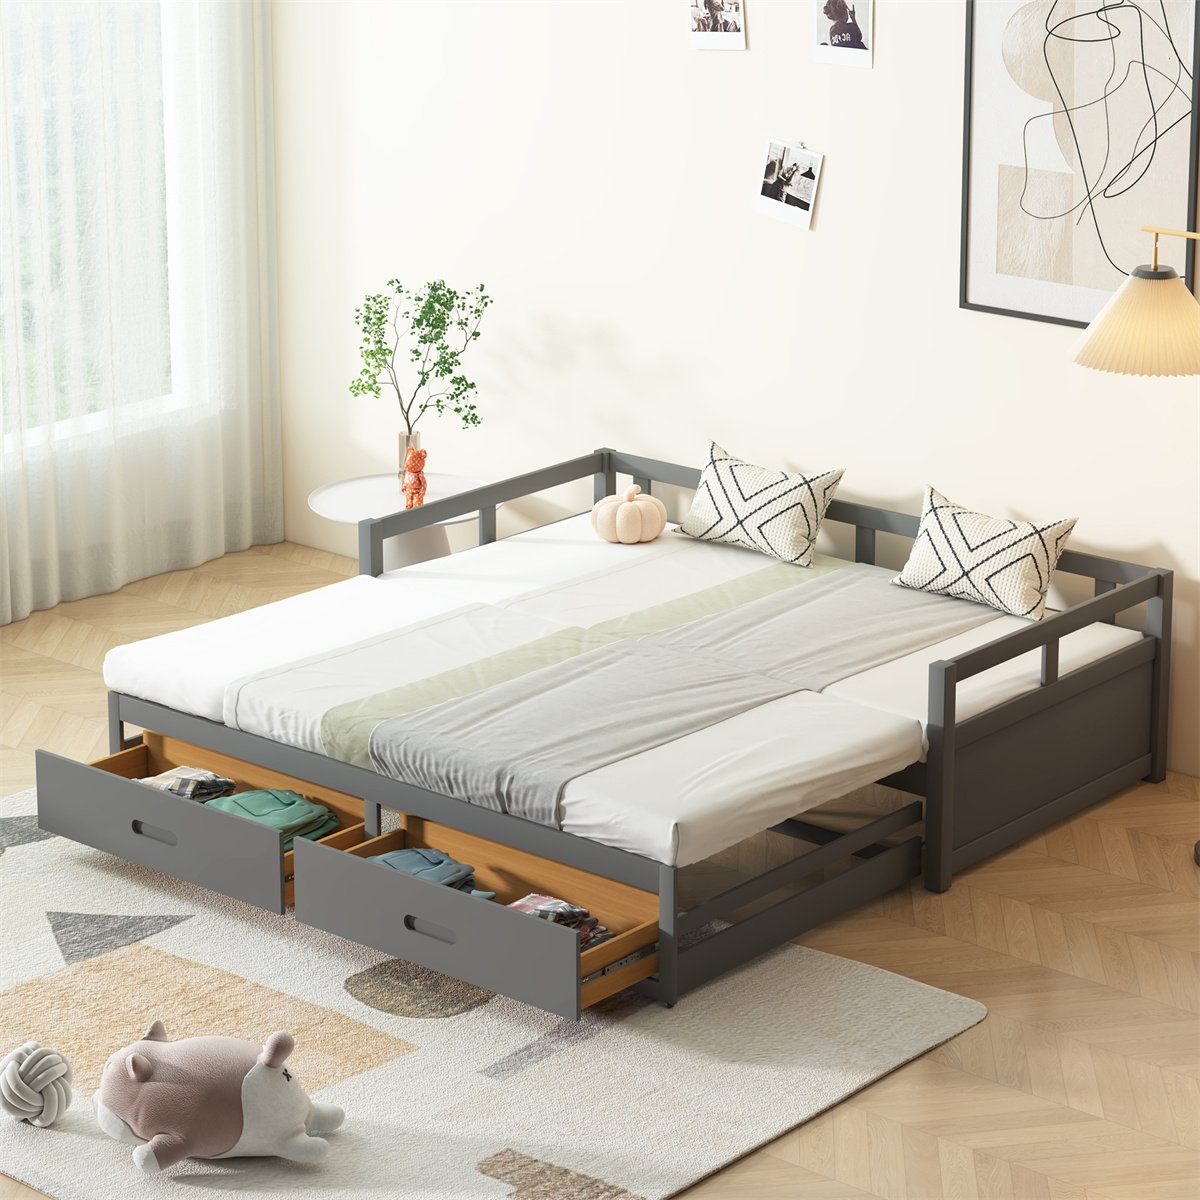 Fangqi Ausziehbett 90-180*200cm Polsterbett mit Holzlatten, Rückenlehne und Armlehnen (Mit einem zweiten Schlafbereich kann der untere Teil bei Nutzung des Einzelbettes als Bettkasten genutzt werden) Grau